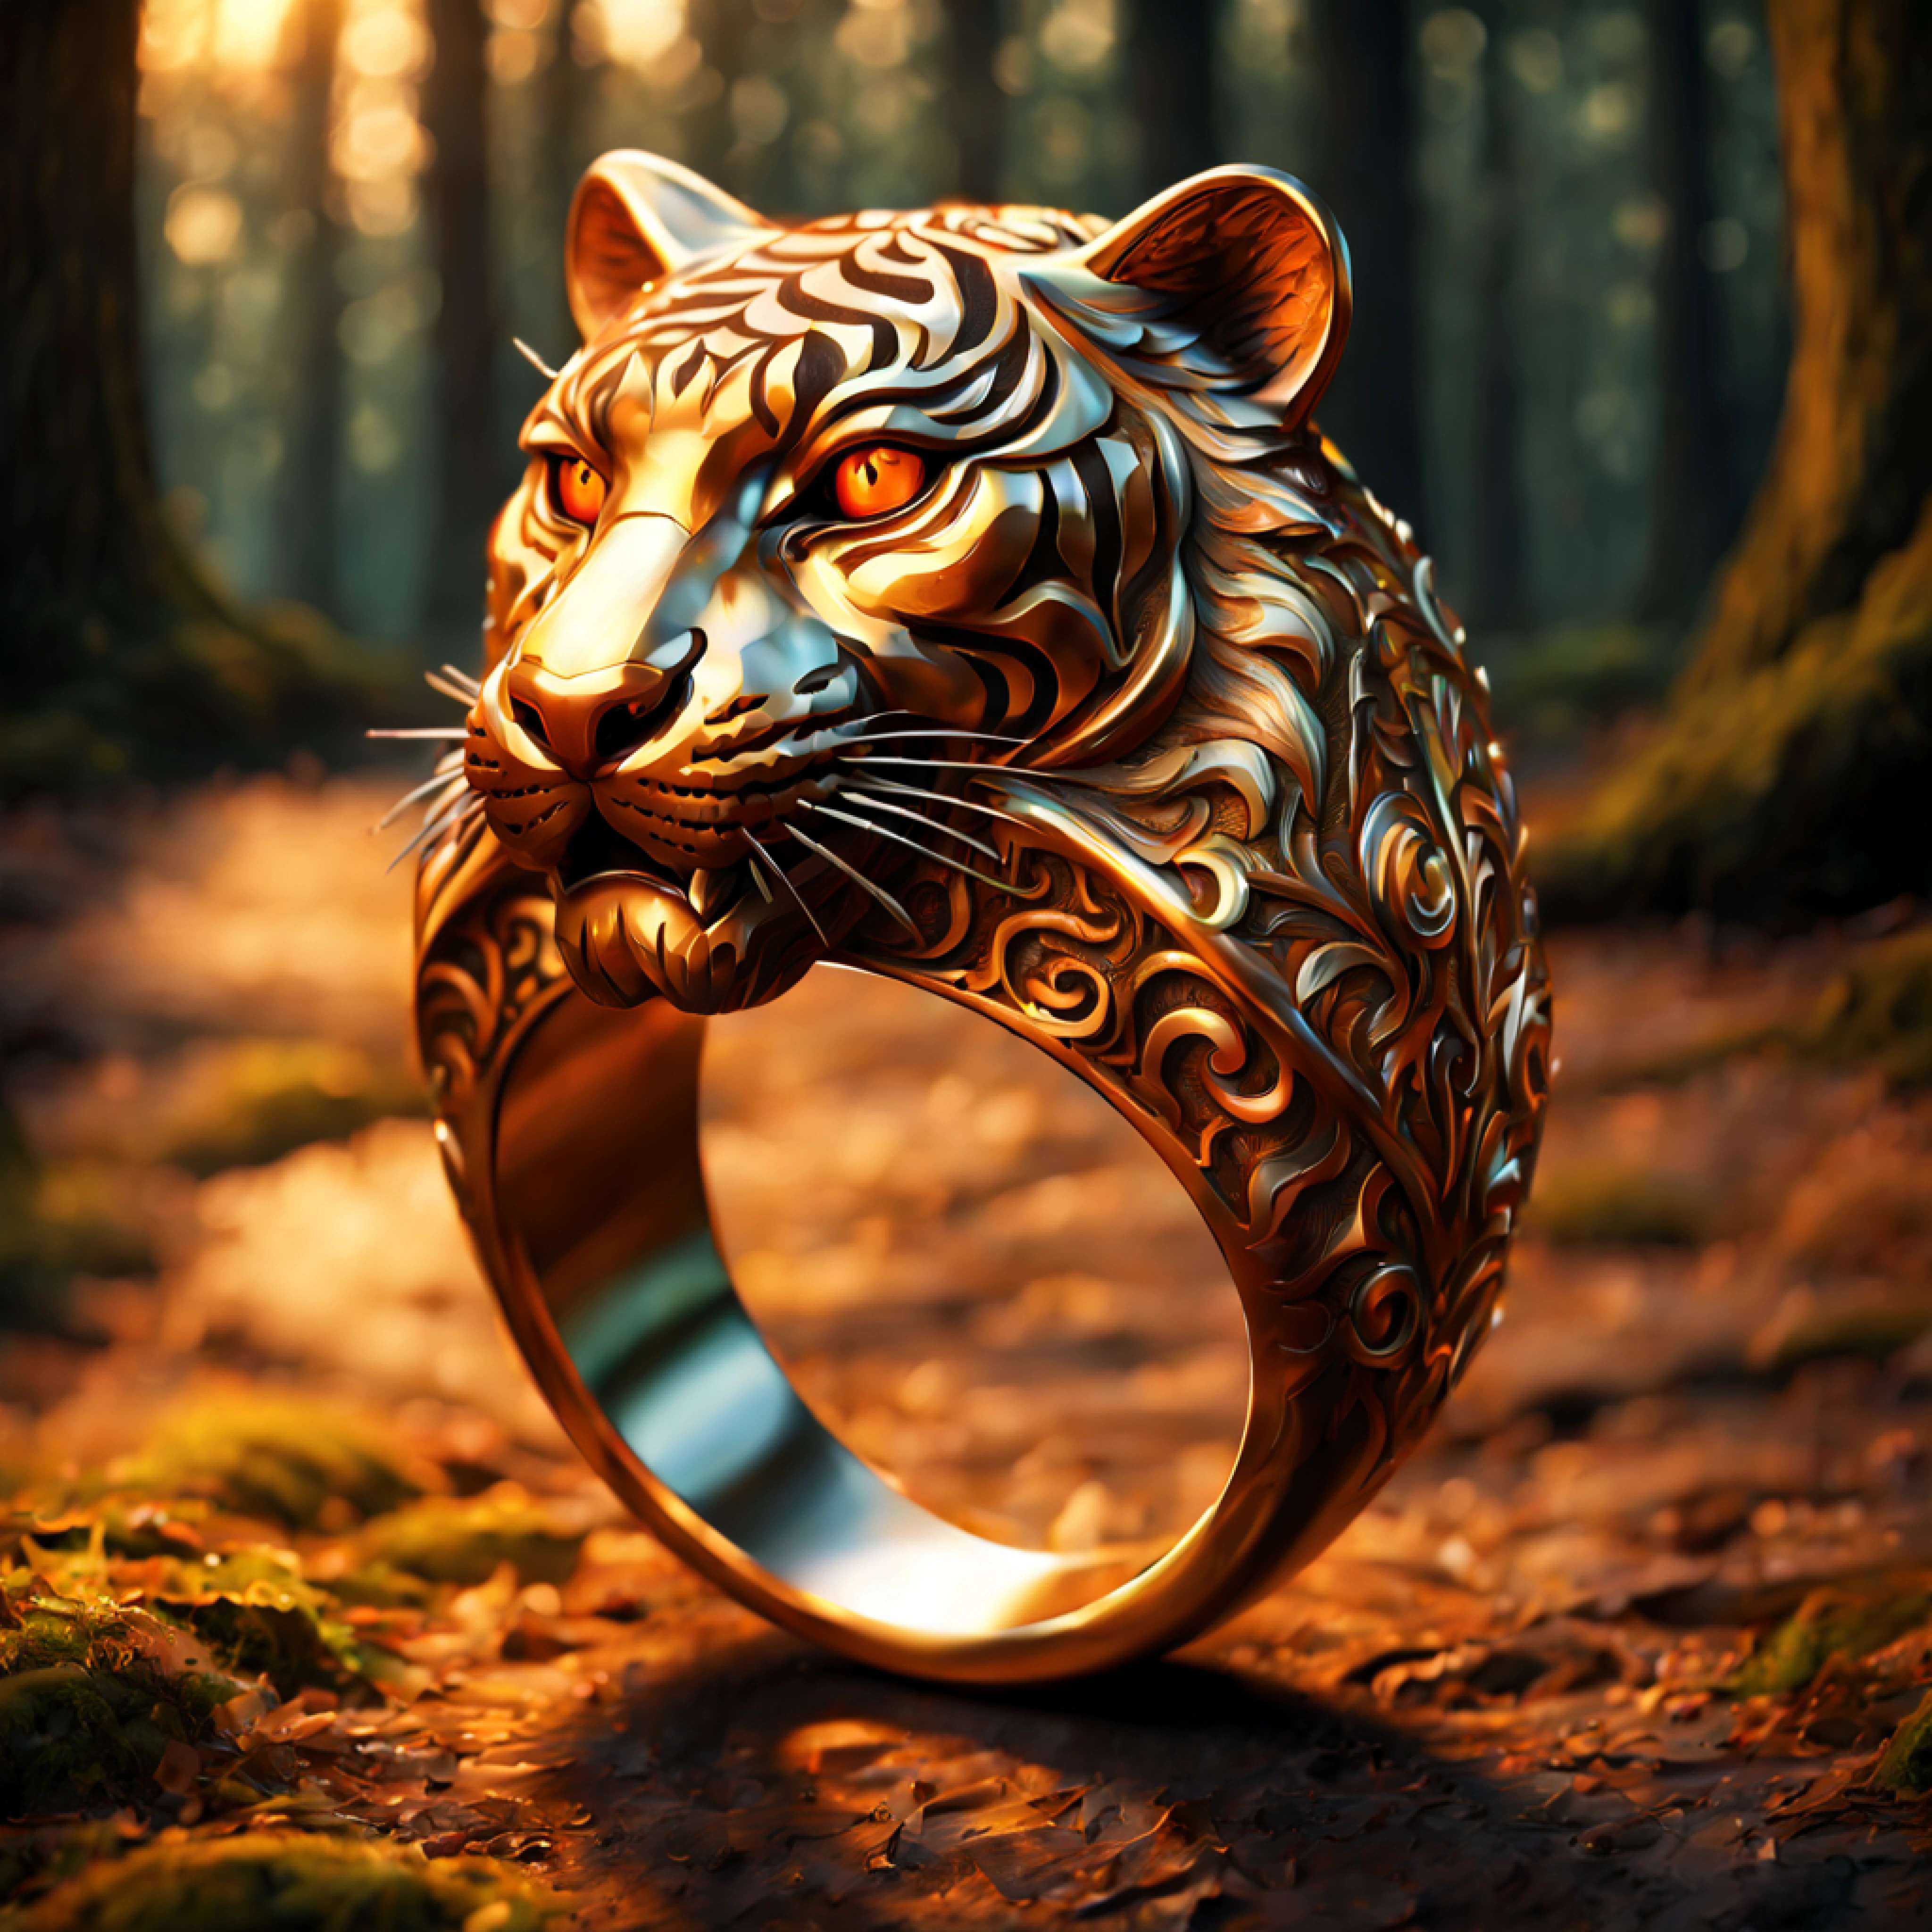 (dibujo 3D), (majestuoso anillo con intrincados grabados de tigre:1.2), Ricos patrones ornamentados, naranja (reflejo metalico:1.2), (Fondo romántico del bosque:1.4)